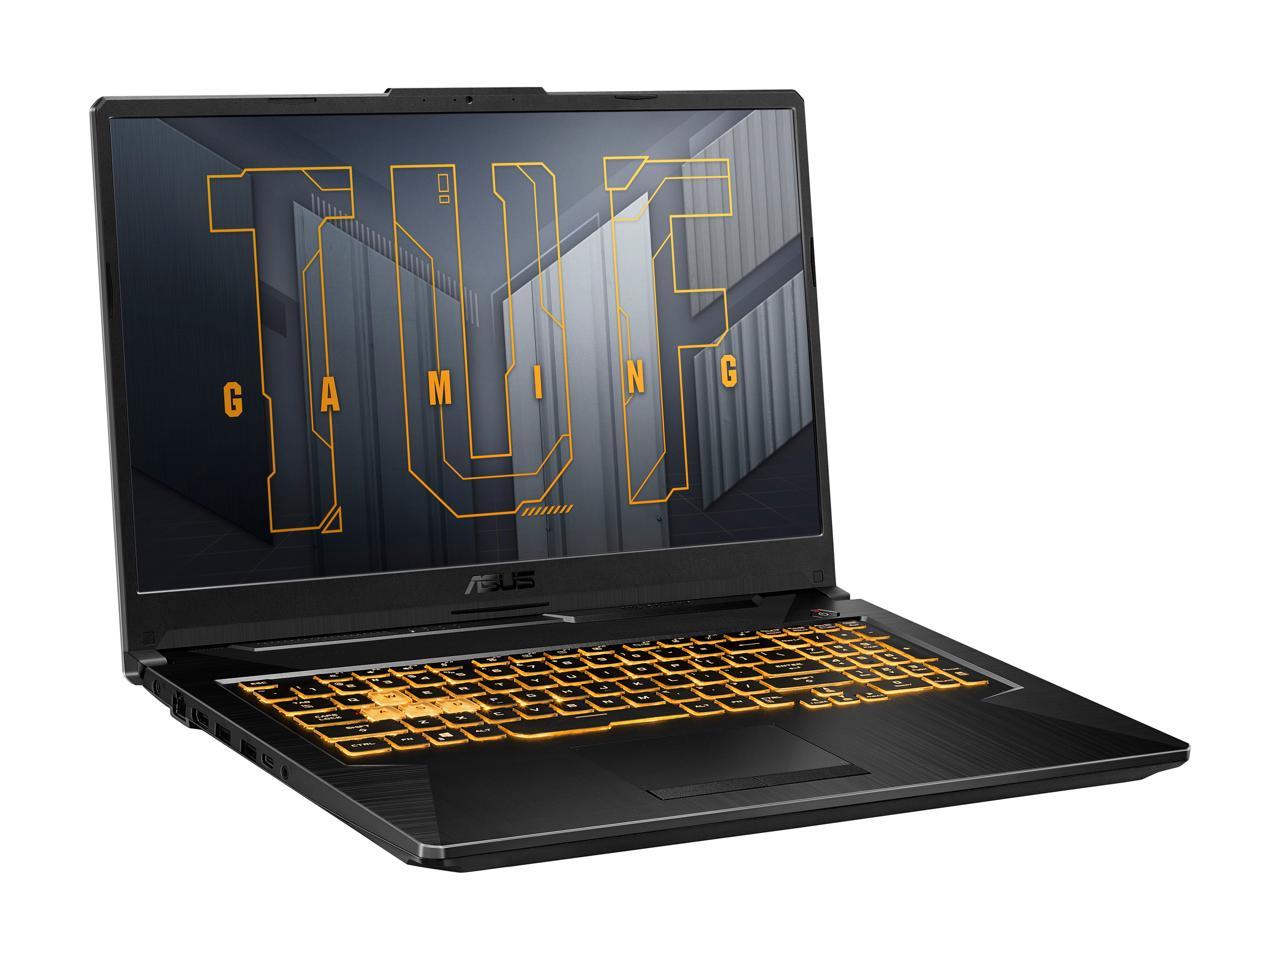 ASUS TUF Gaming F17 Gaming Laptop, 17.3